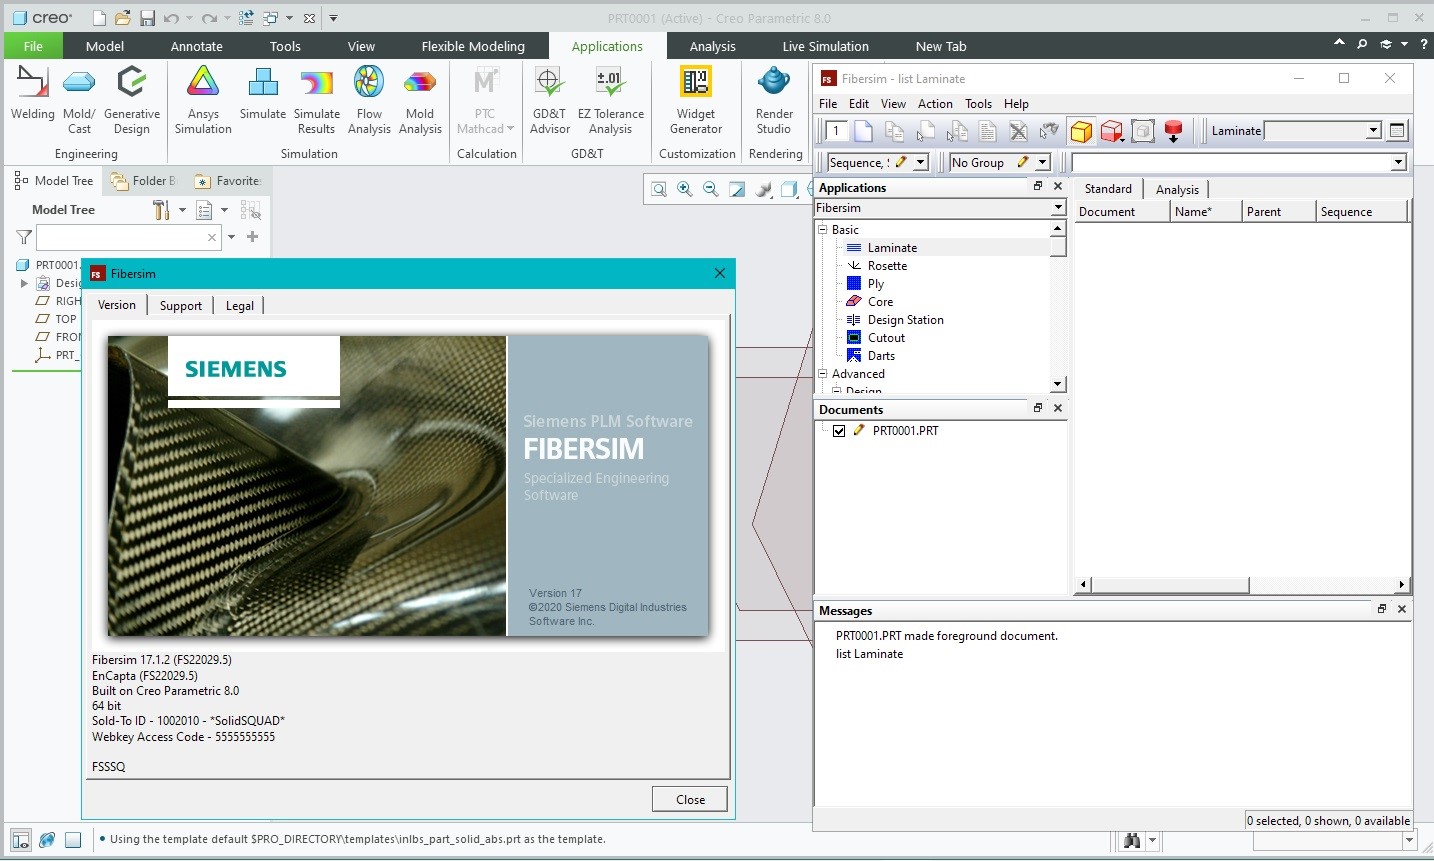 Working with Siemens FiberSIM 17.1.2 for PTC Creo 8.0 Win64 full